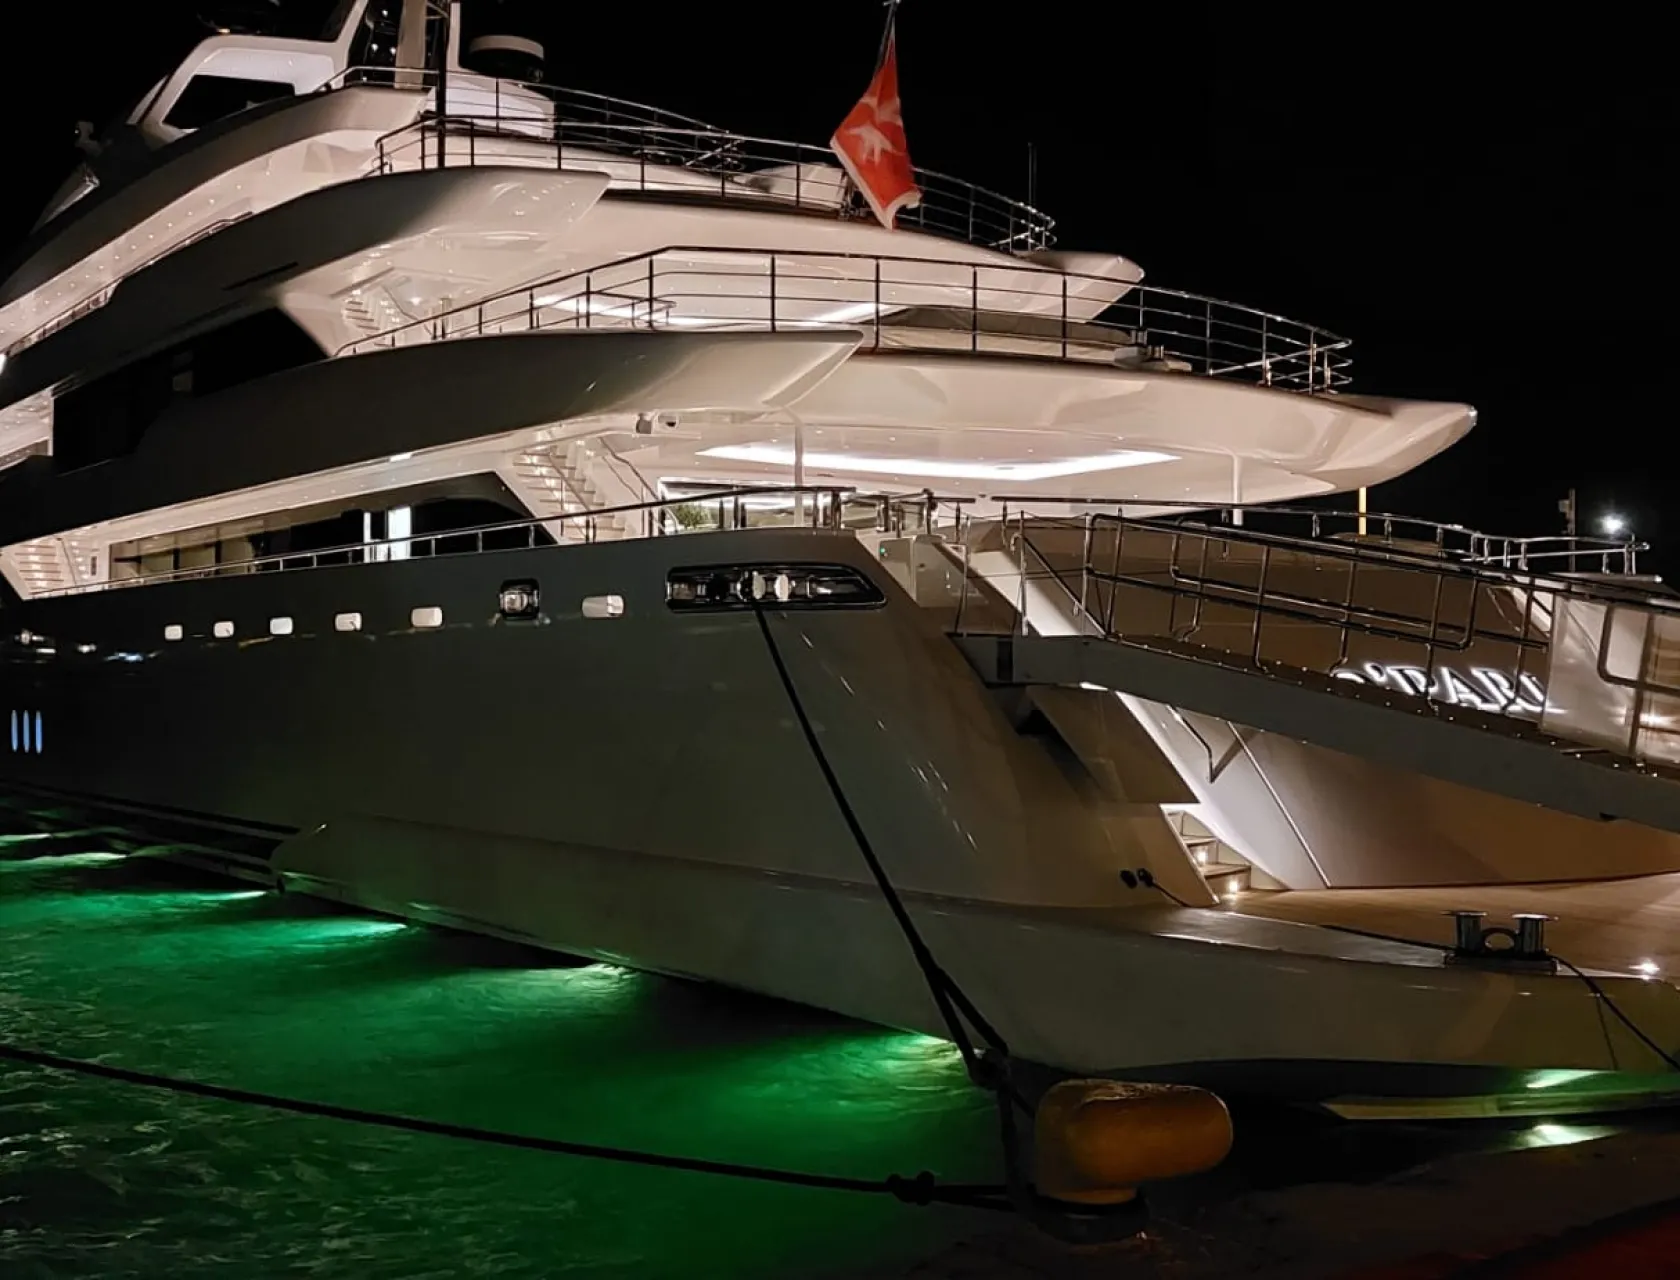 MEDYS yacht show